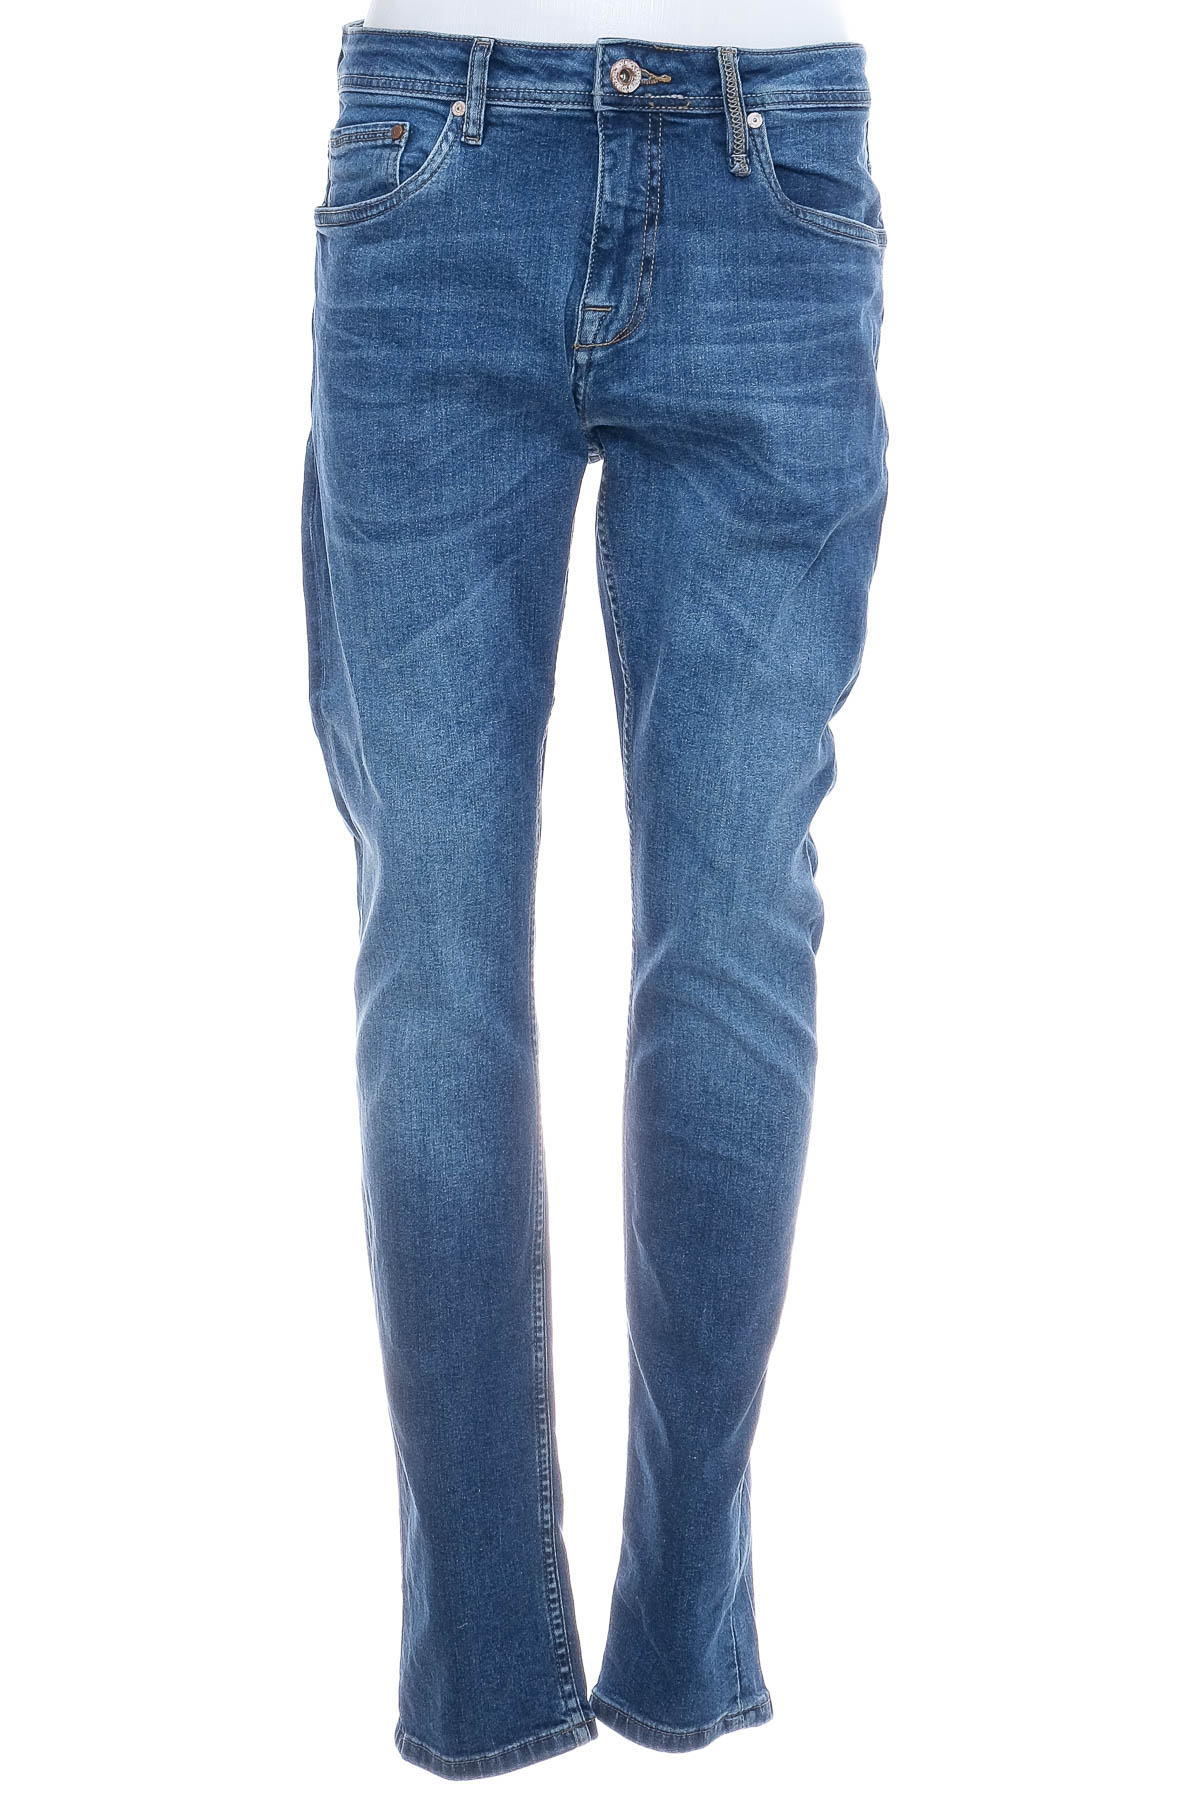 Jeans pentru bărbăți - SUBLEVEL - 0